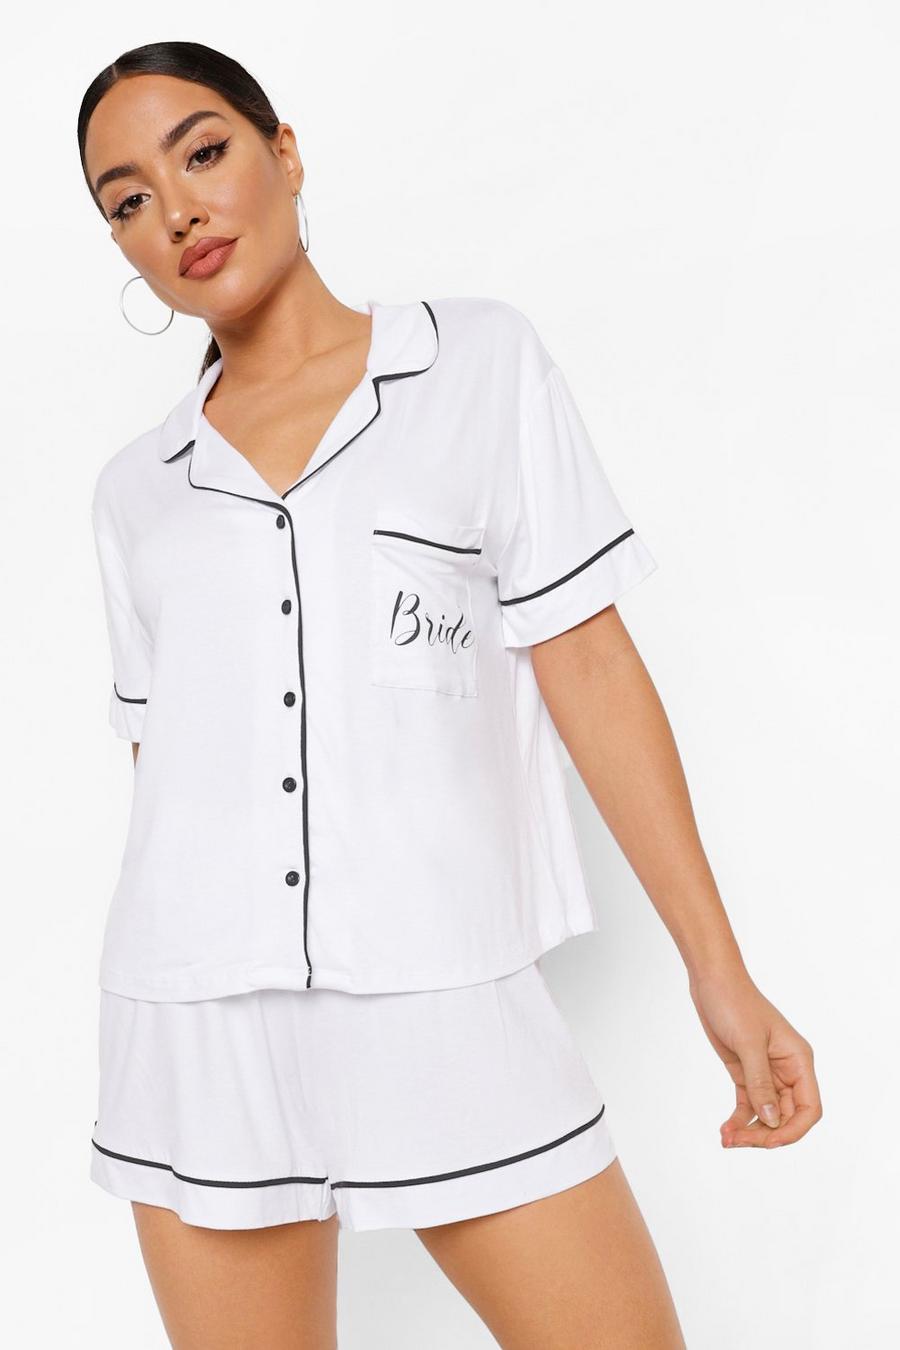 Bride Jersey Pyjama-Set mit Knopfleiste, Weiß blanc